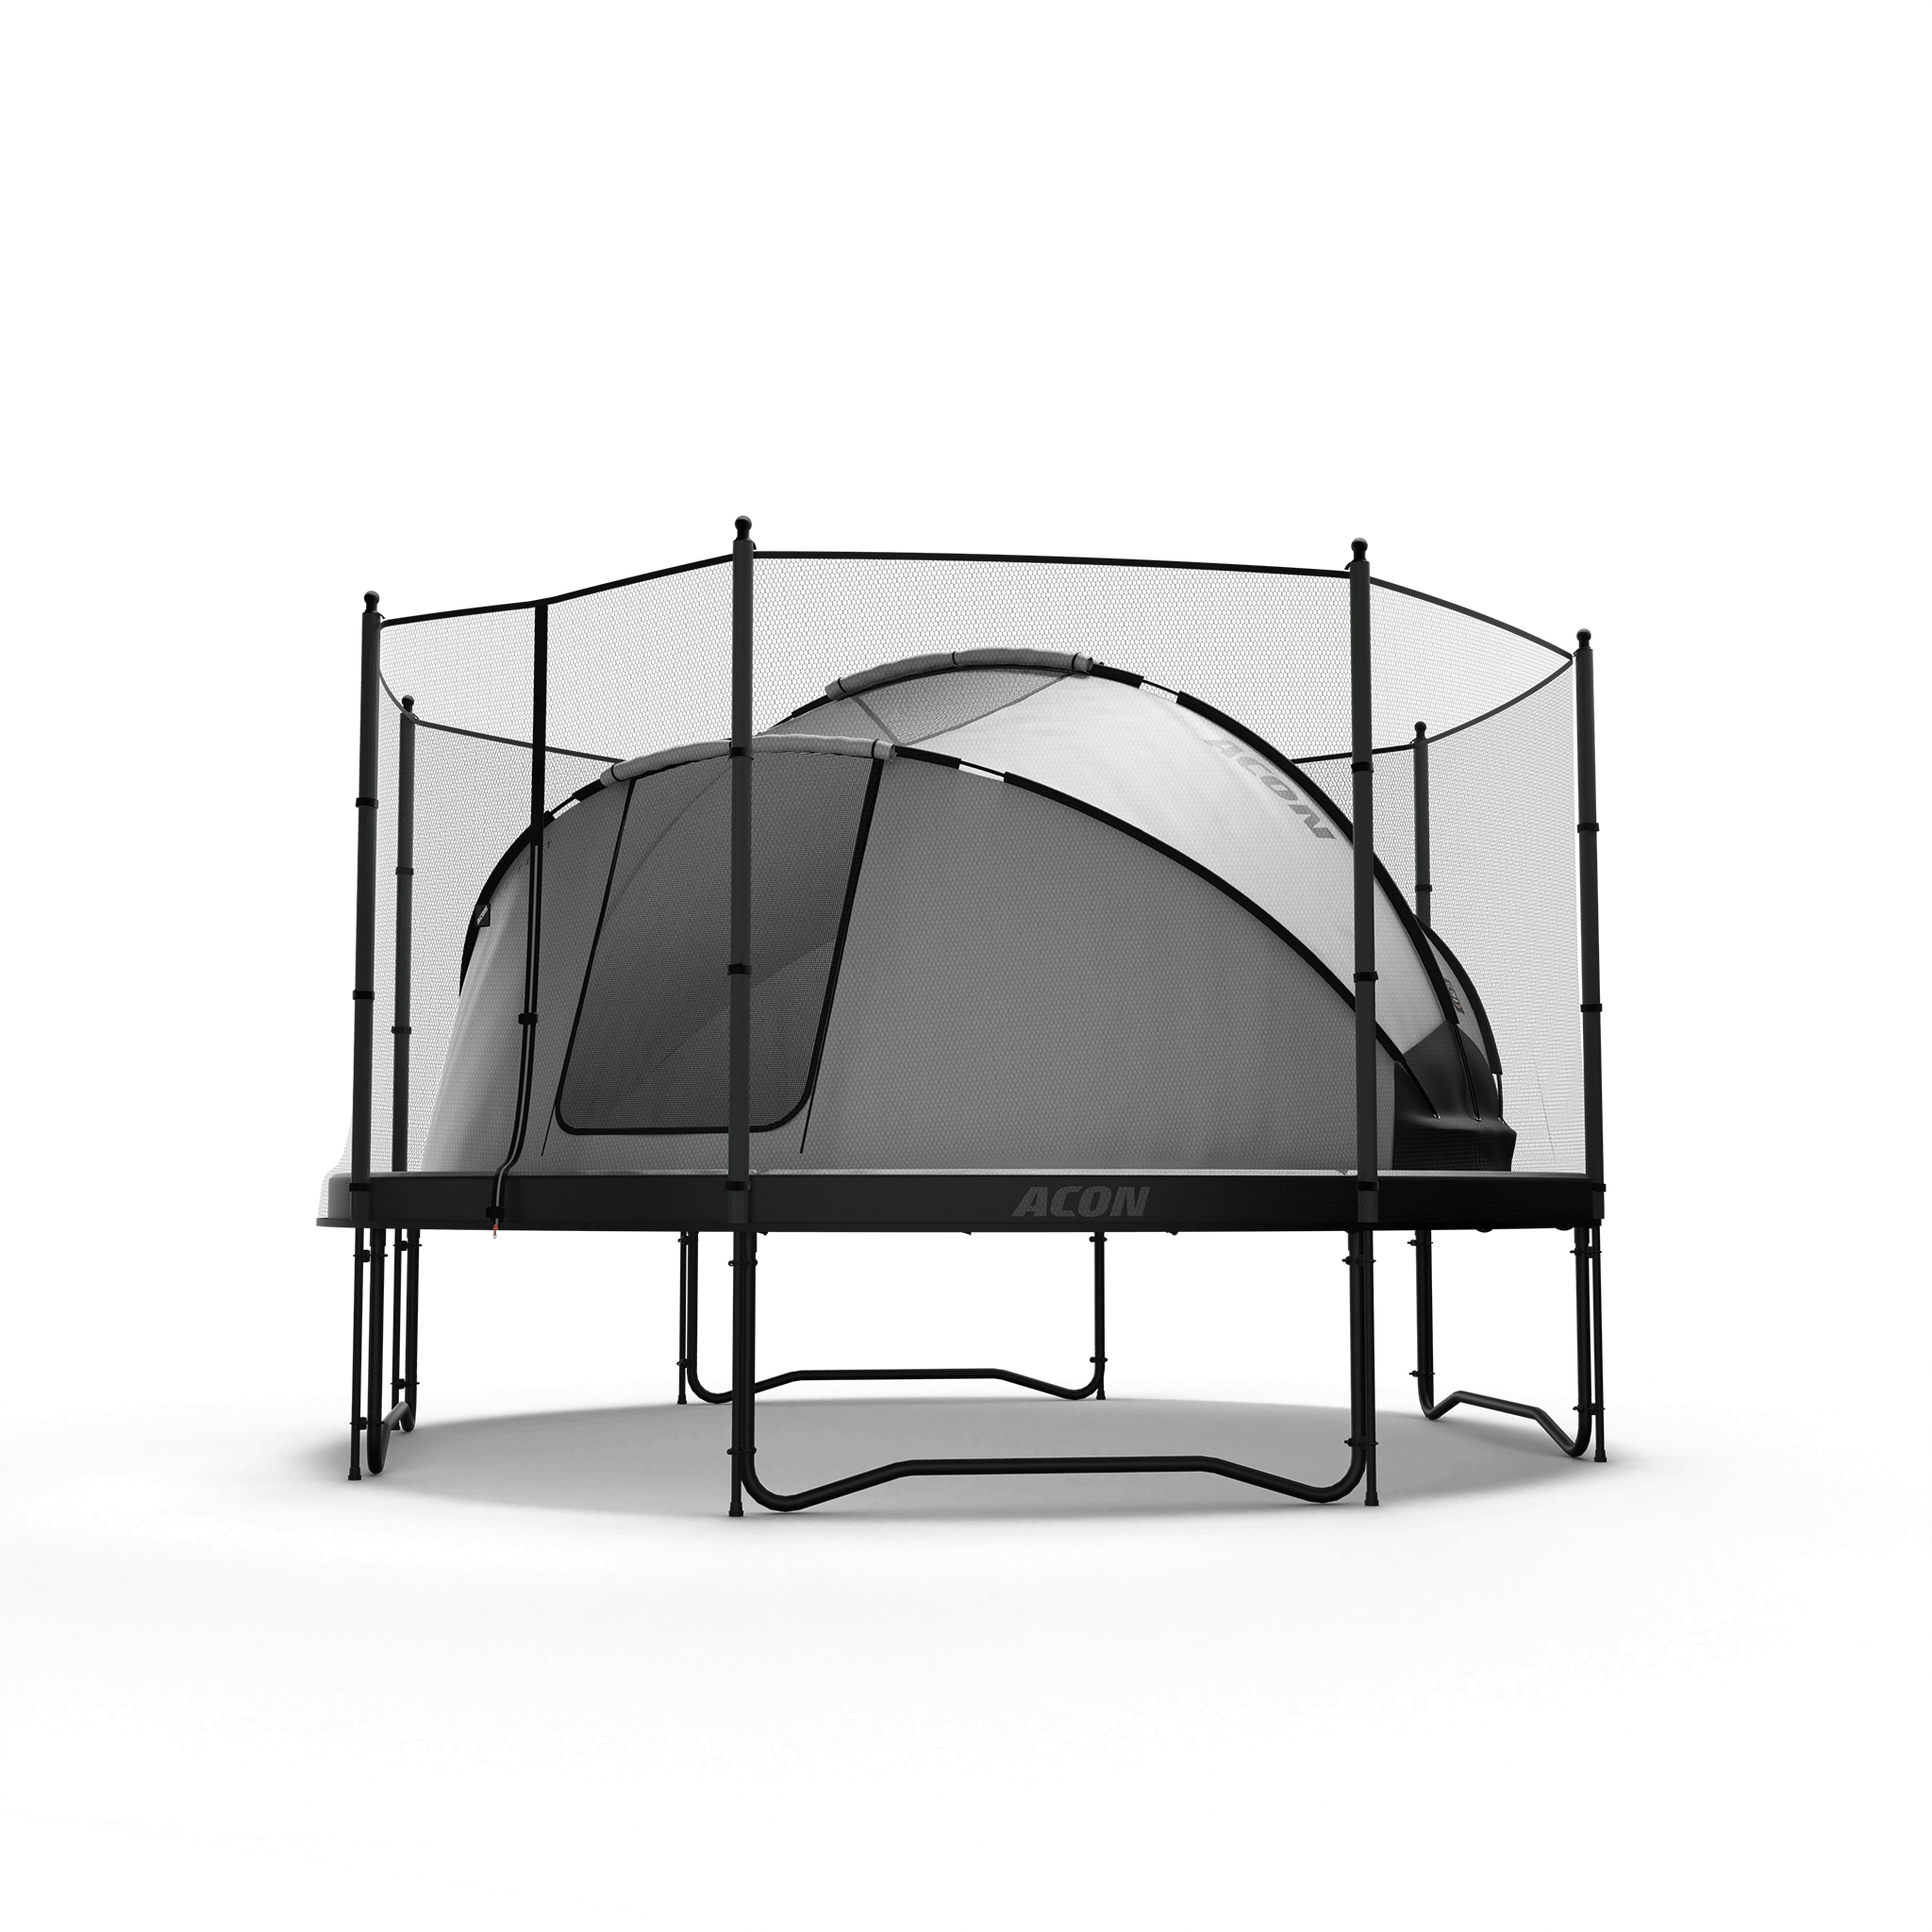 Acon trampoline tent with standard exterrior safety net doors open